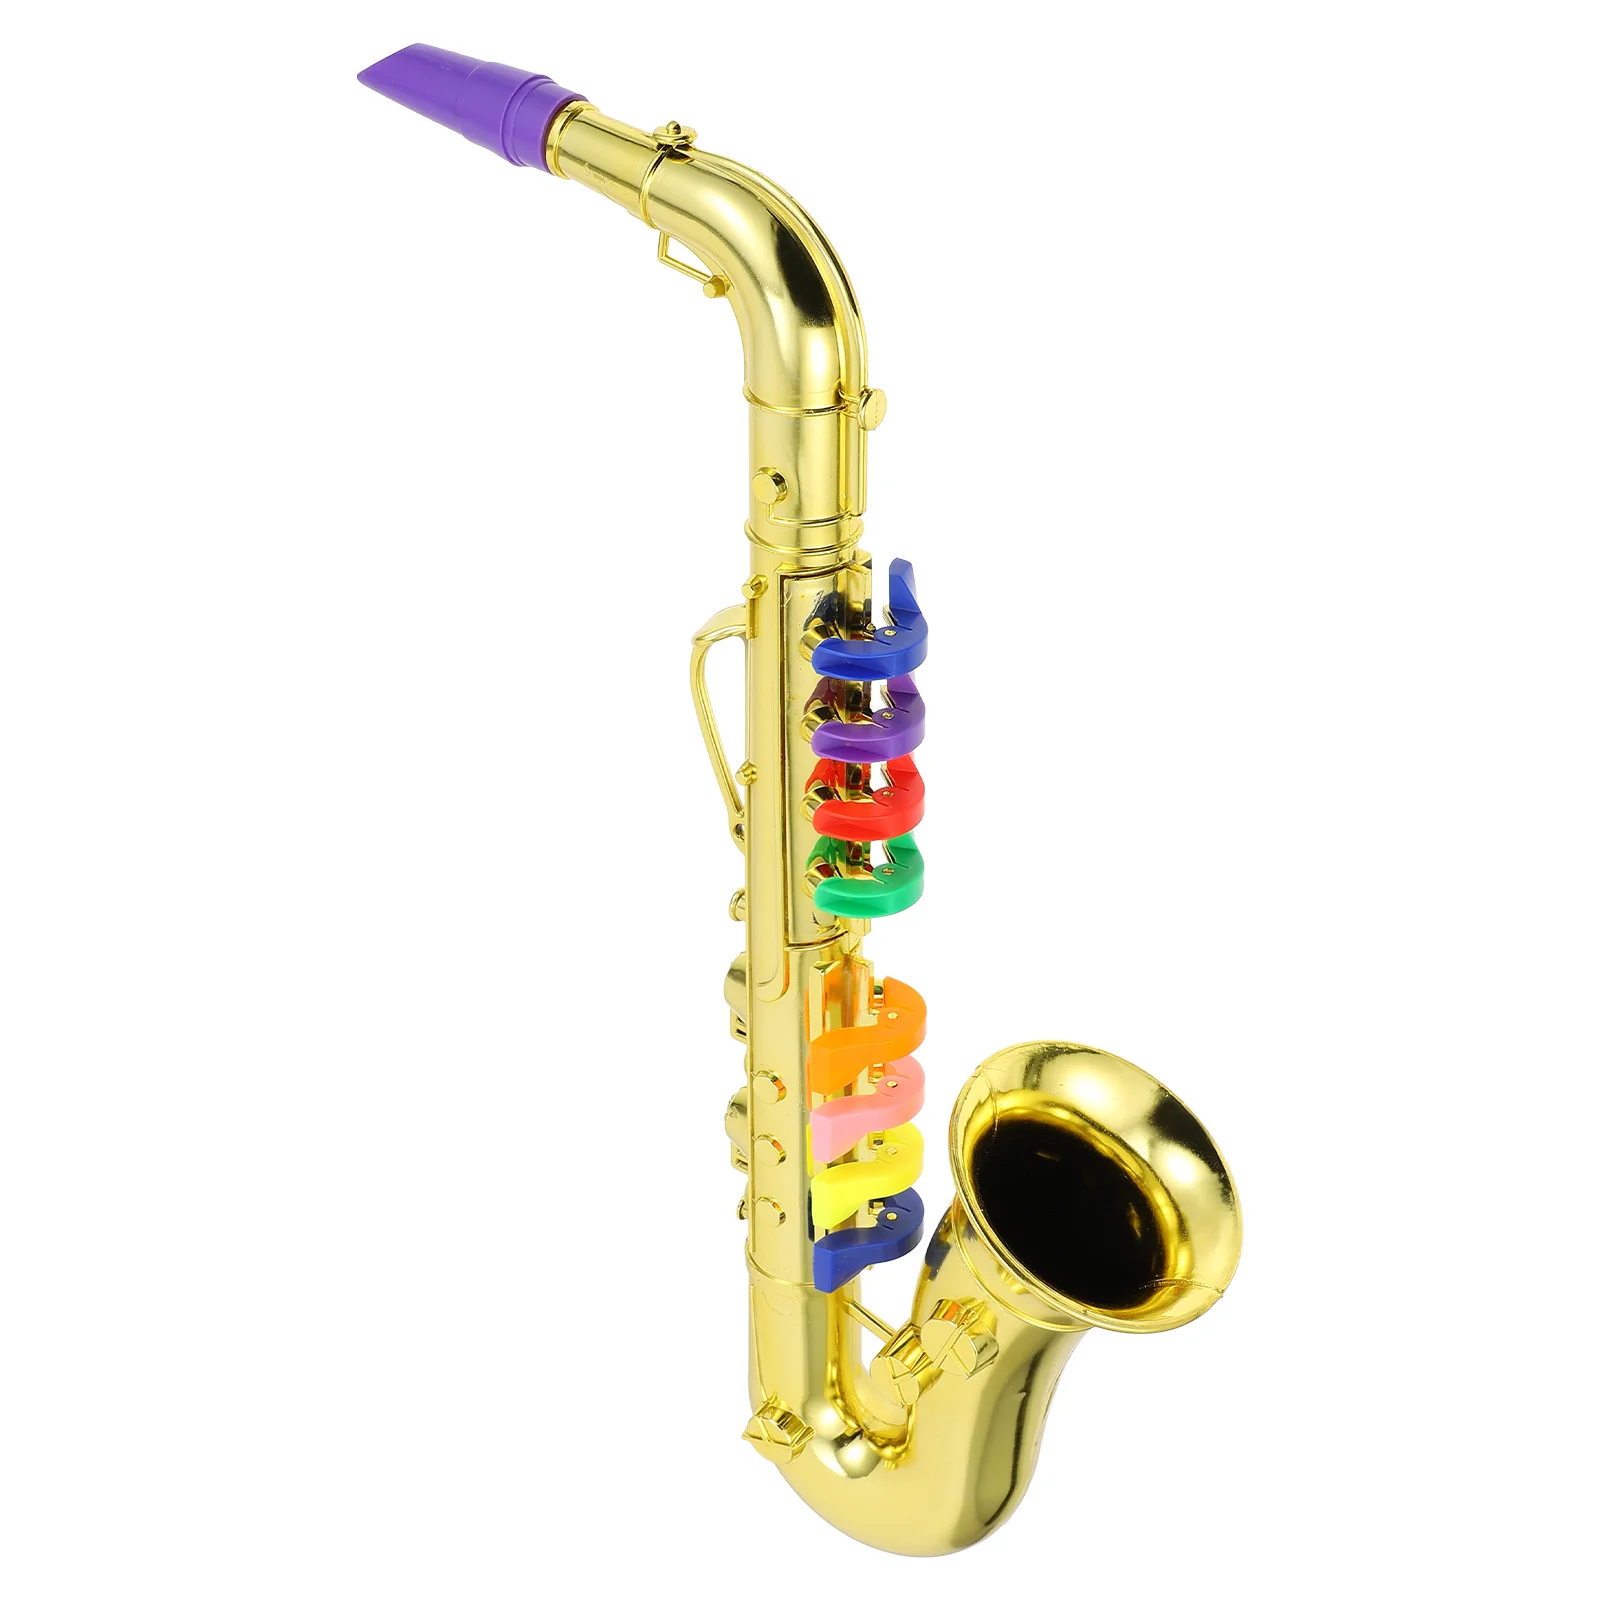 

Модель саксофона, труба, детская игрушка, миниатюрные игрушки, имитация музыкального инструмента, детский вертикальный практичный